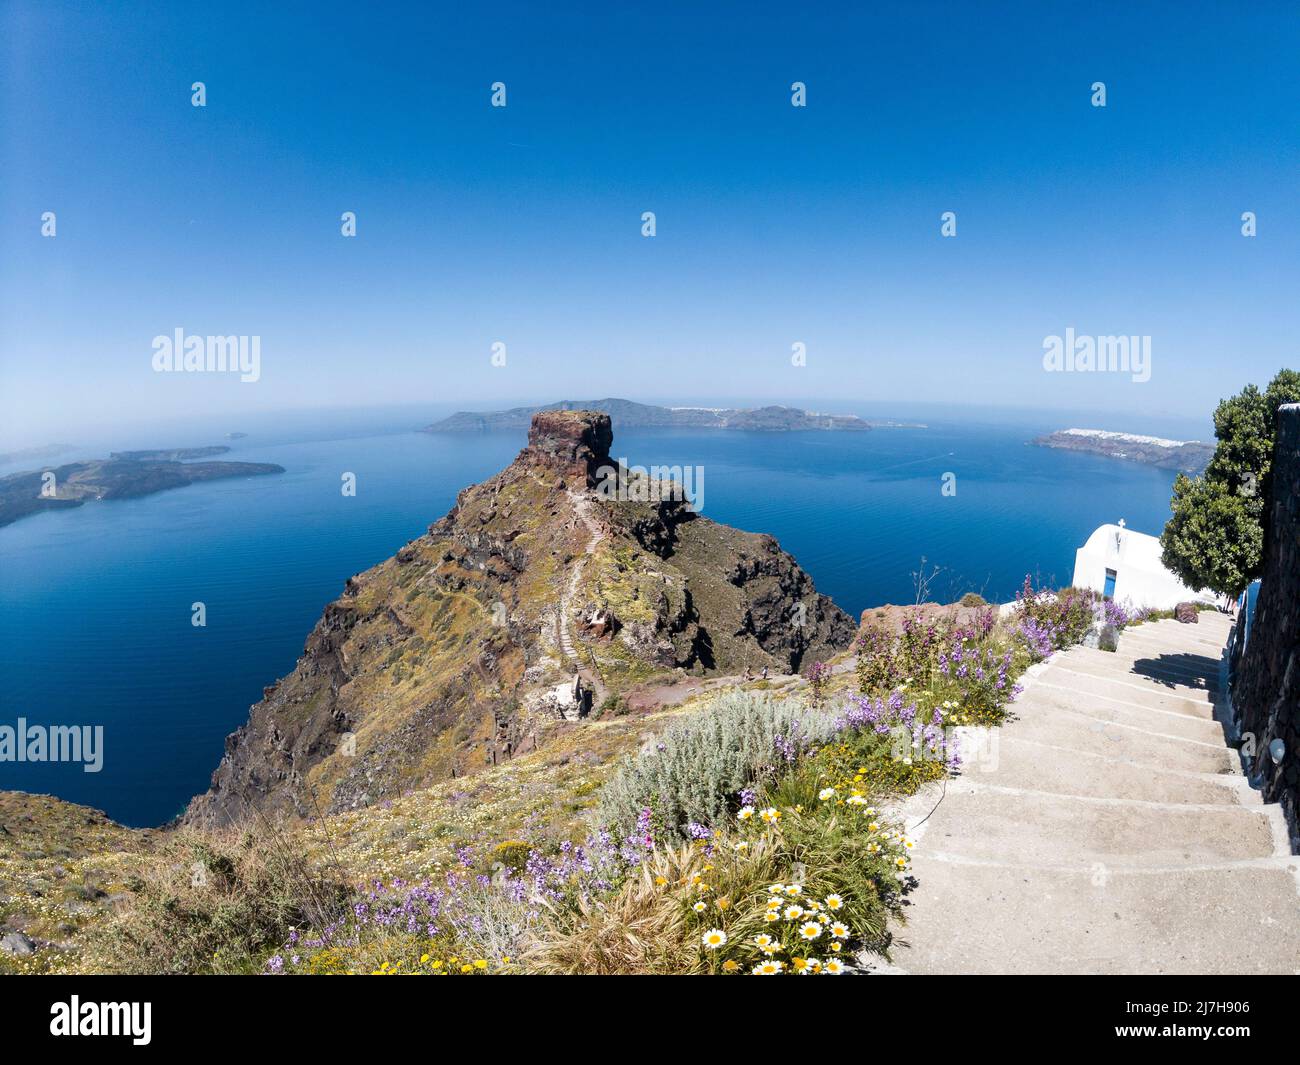 Belle vue sur la colline de la roche de Skaros, dans l'île de Santorin, Grèce, et vue sur la mer de la partie volcanique de Santorin et la légendaire Caldera. Banque D'Images